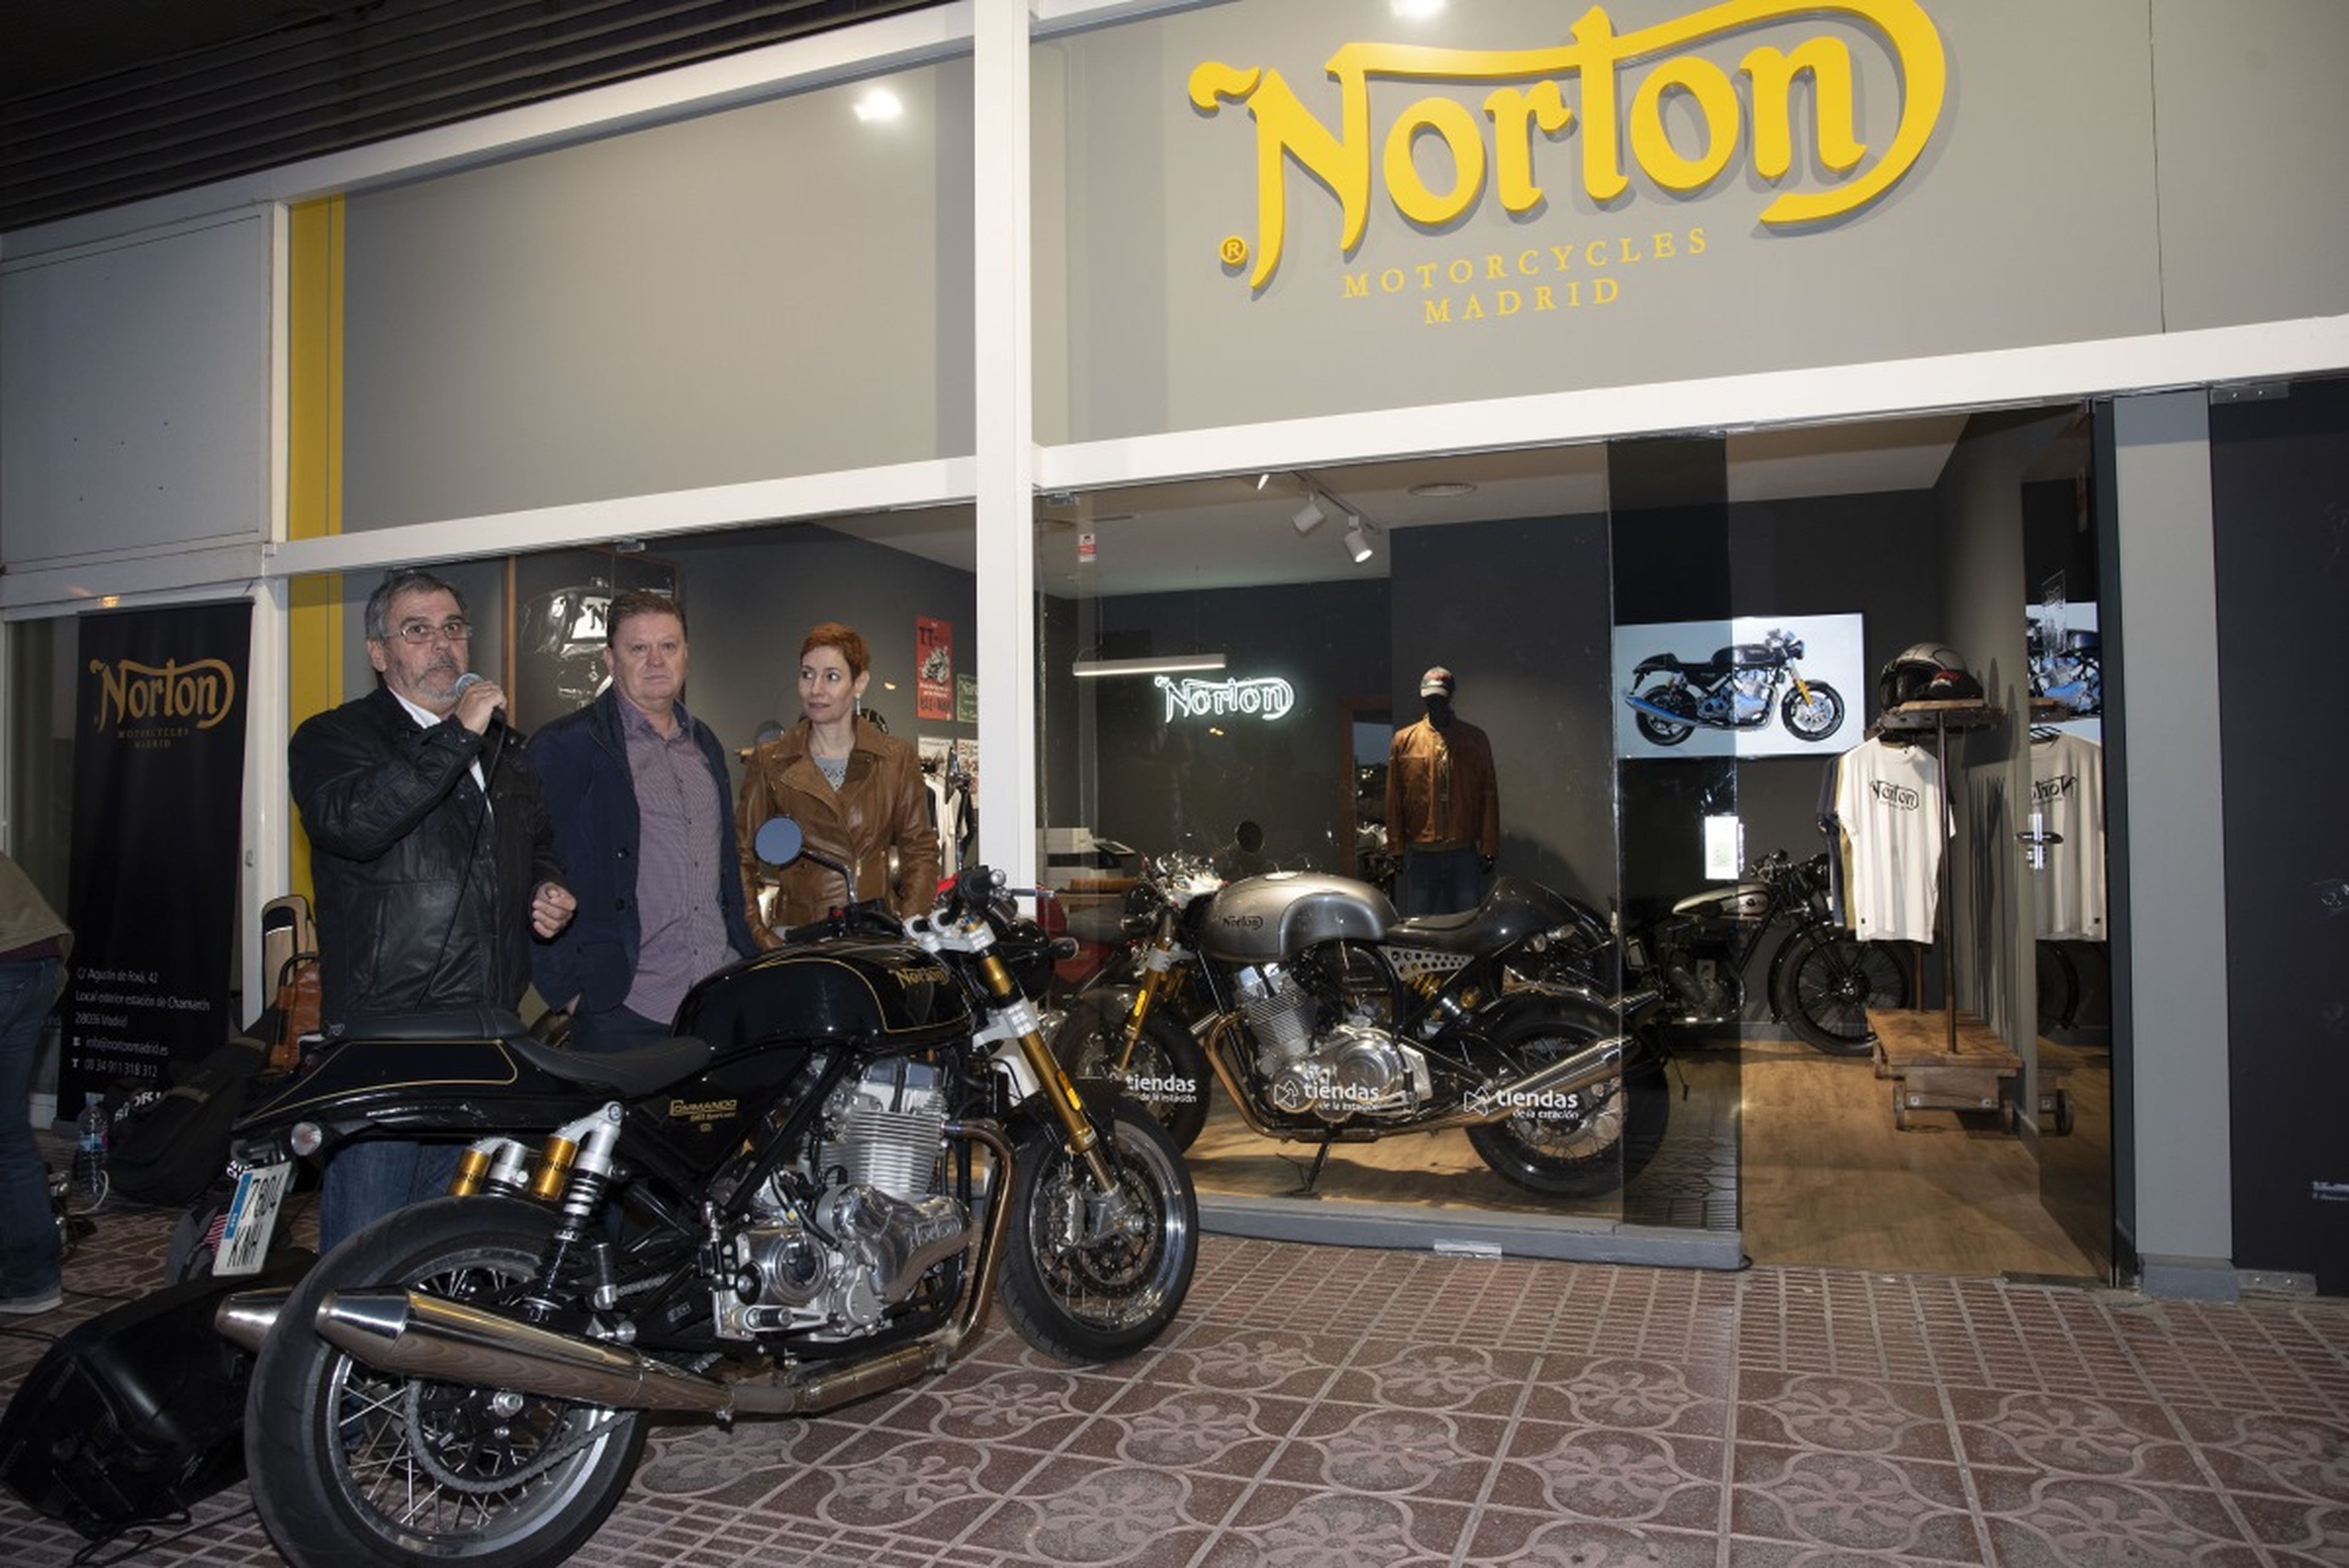 Tienda Norton Motorcycles en Madrid